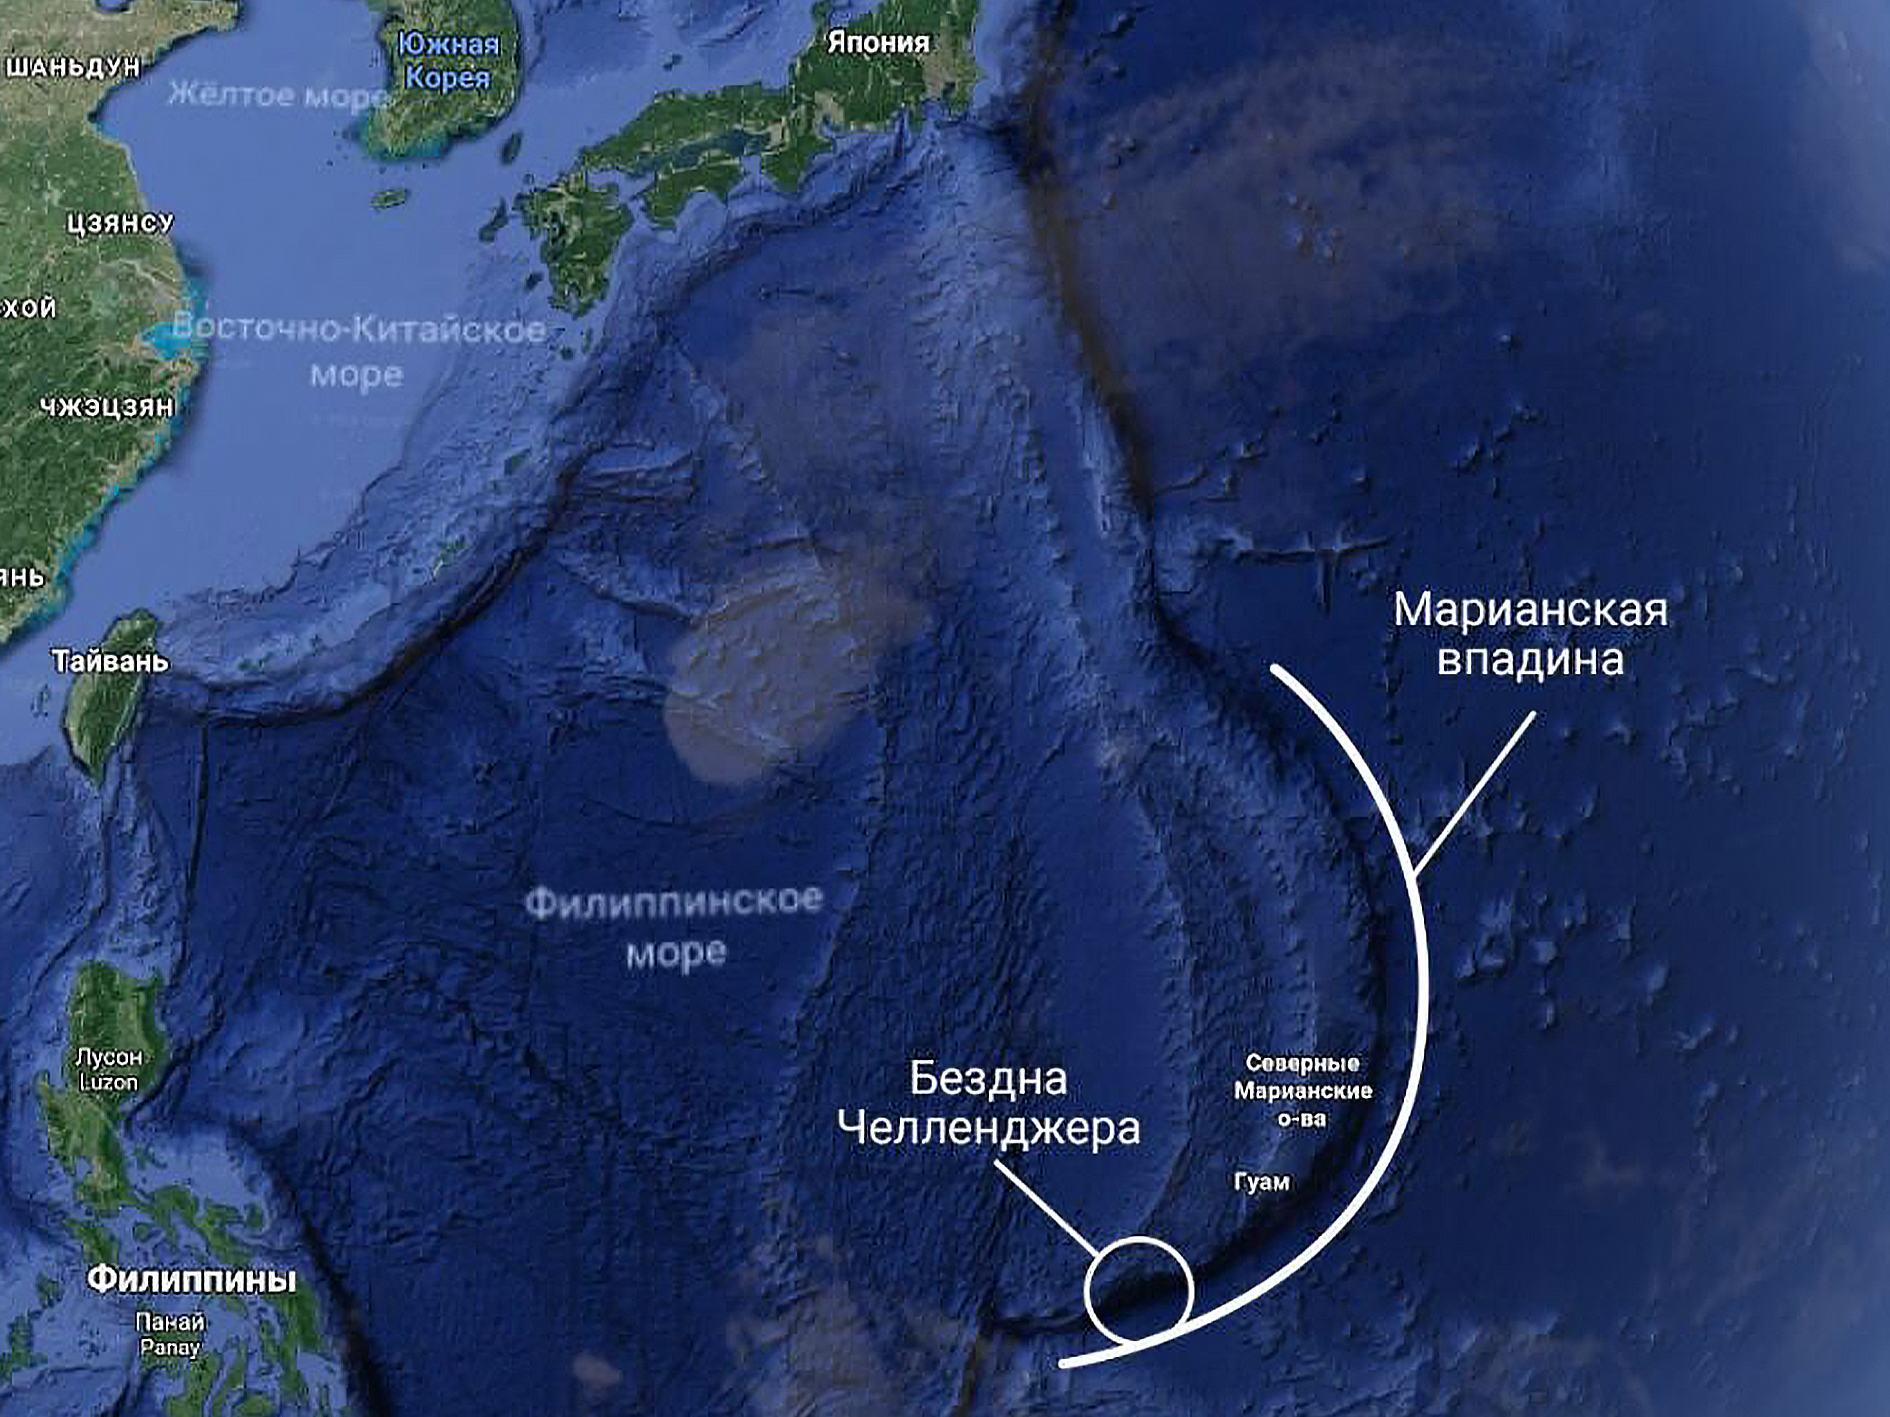 Максимальная глубина в мире. Марианский жёлоб на карте Тихого океана. Марианский жёлоб глубина на карте. Марианская впадина на карте Тихого океана глубина. Марианская впадина глубина на карте.